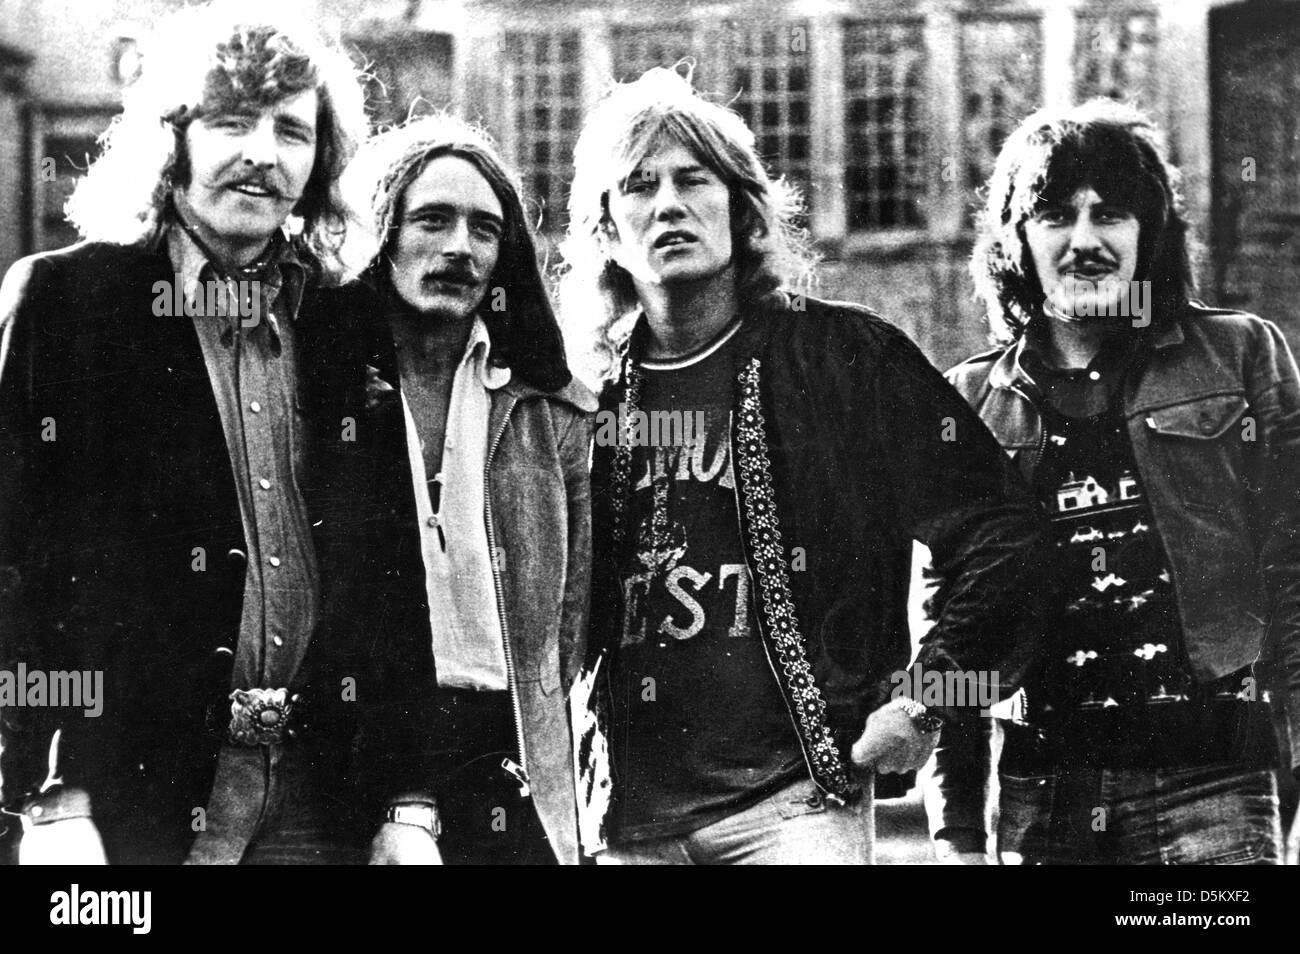 Dieci anni dopo la foto promozionale del Regno Unito gruppo Blues-Rock circa 1975 Foto Stock